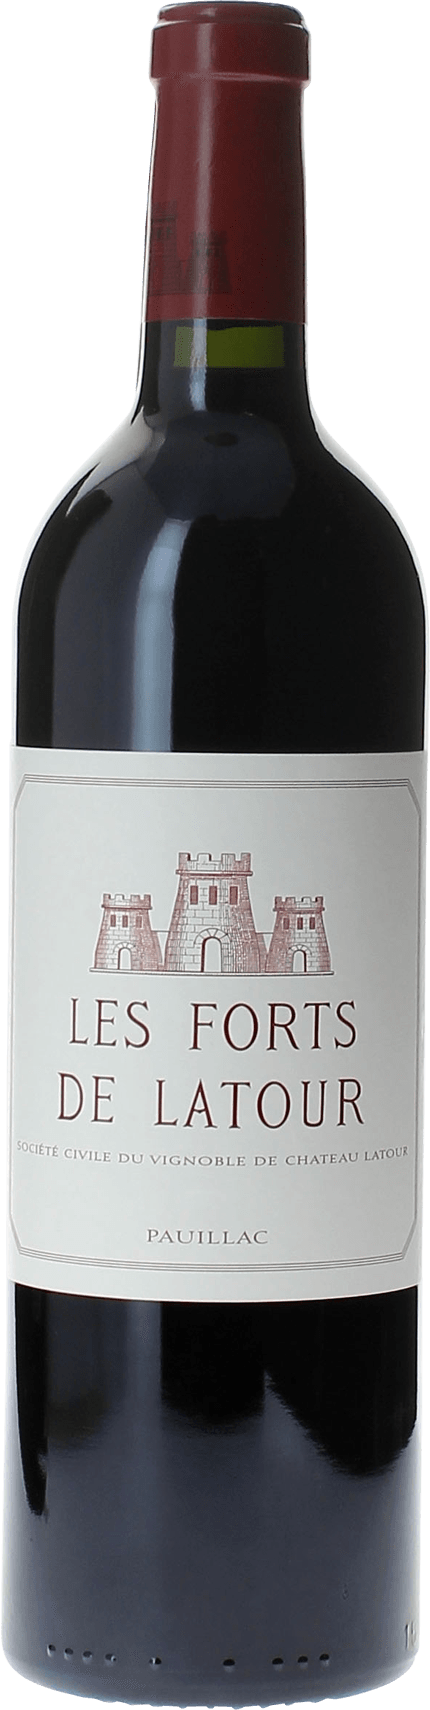 Les forts de latour 1991 2me vin de LATOUR Pauillac, Bordeaux rouge